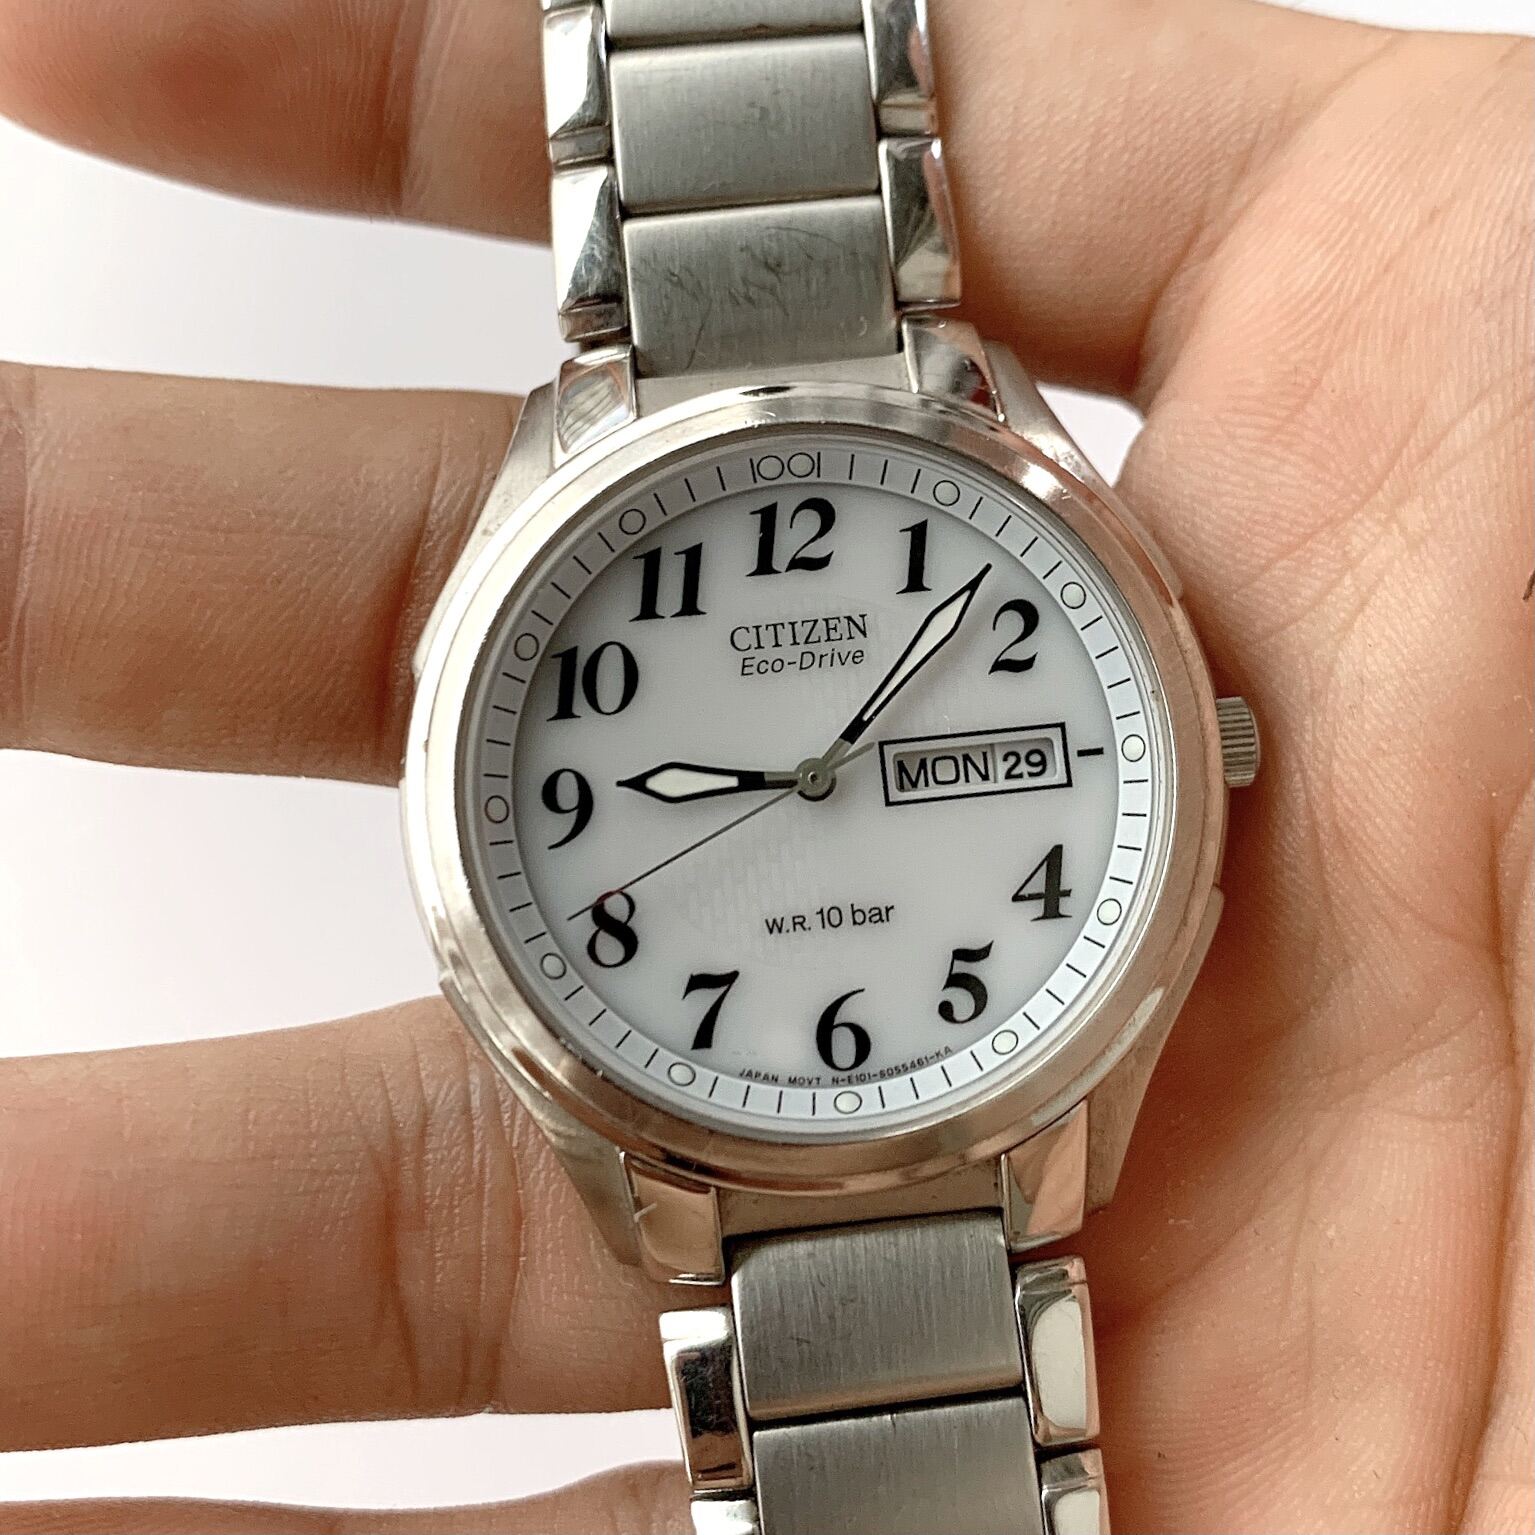 HCM]Đồng hồ chính hãng CITIZEN Eco-Drive nguyên zin 100% 